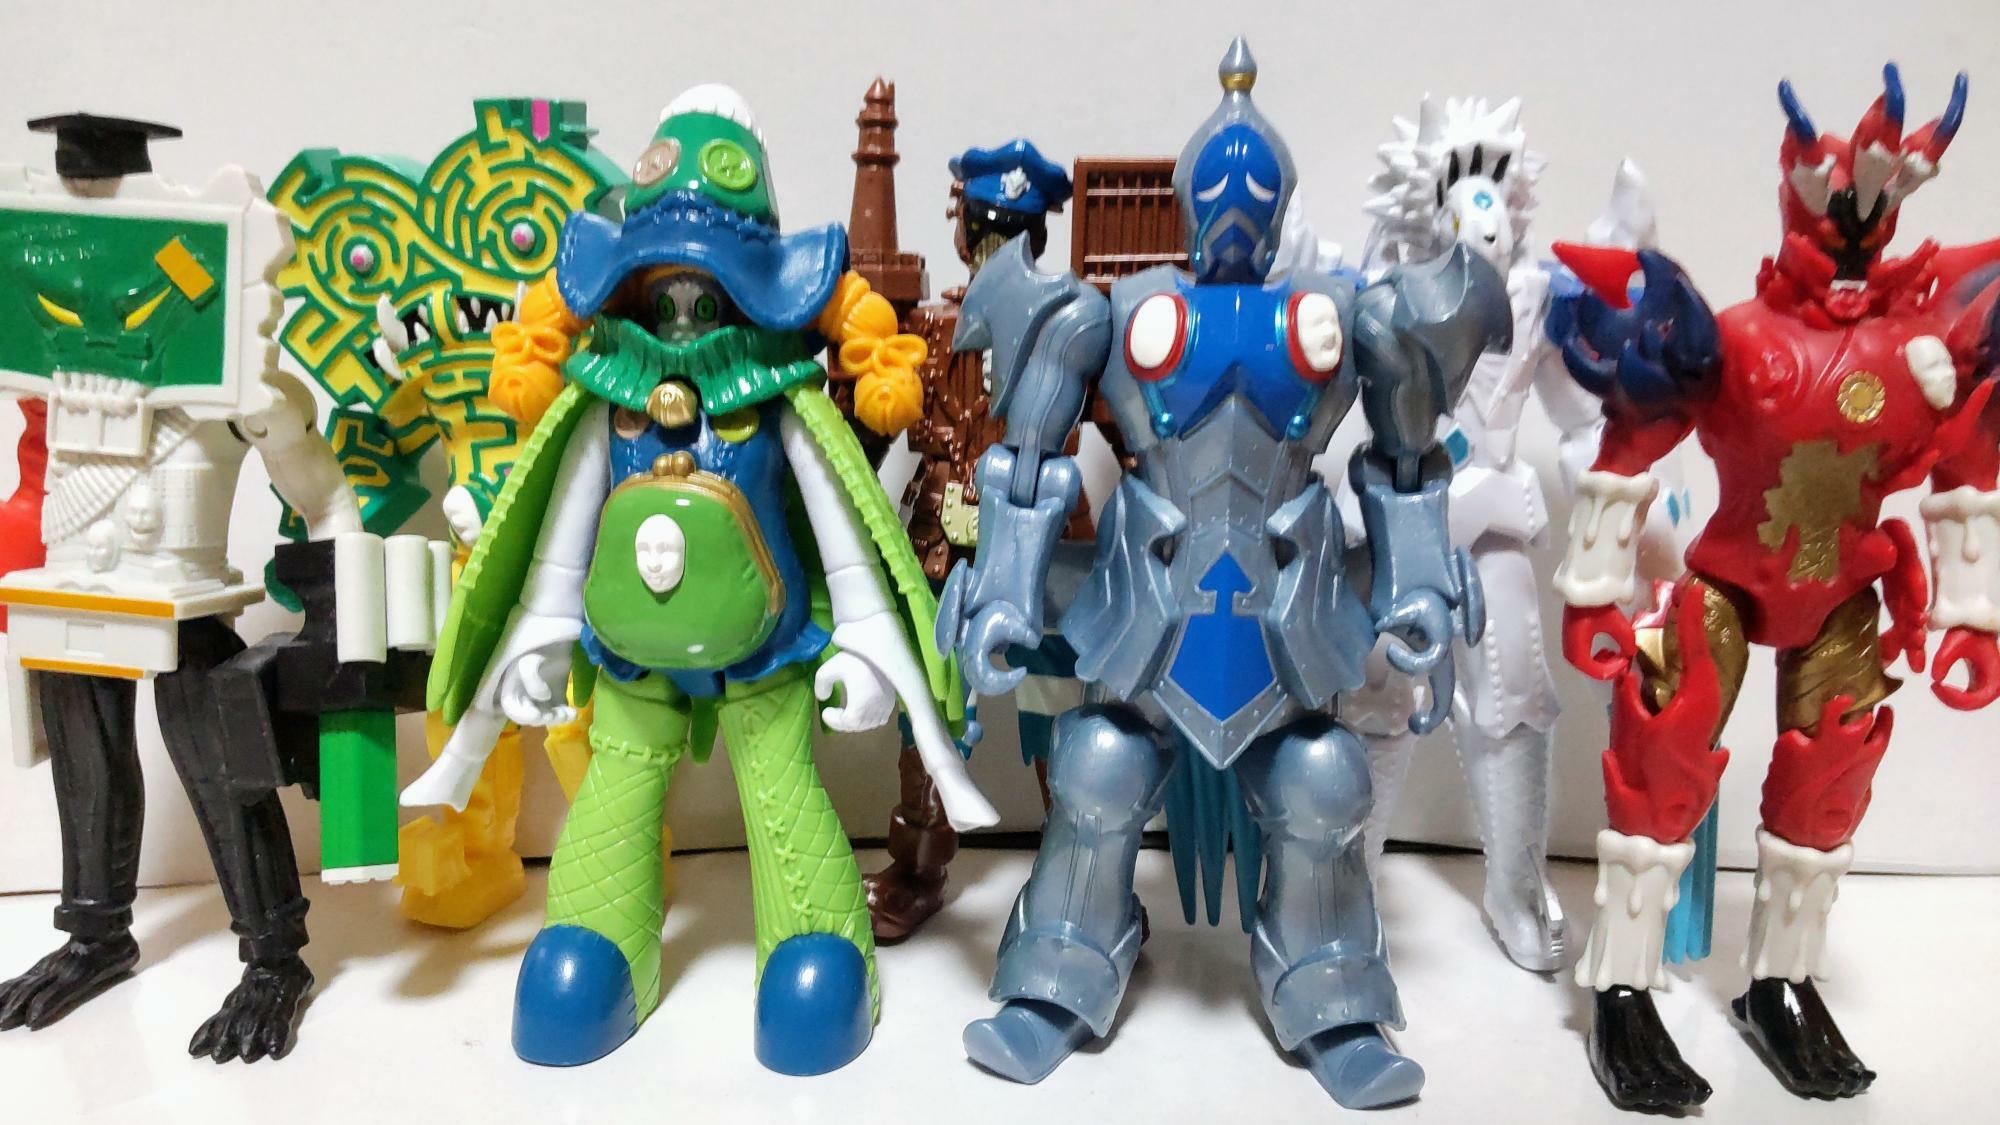 日本市場で販売されるスーパー戦隊シリーズの玩具は、ヒーロー側と比べ悪役が商品化される機会は少ない。しかし米国市場では悪役も多種多様な形で商品化され、プレイバリューを高めているのが特徴的。